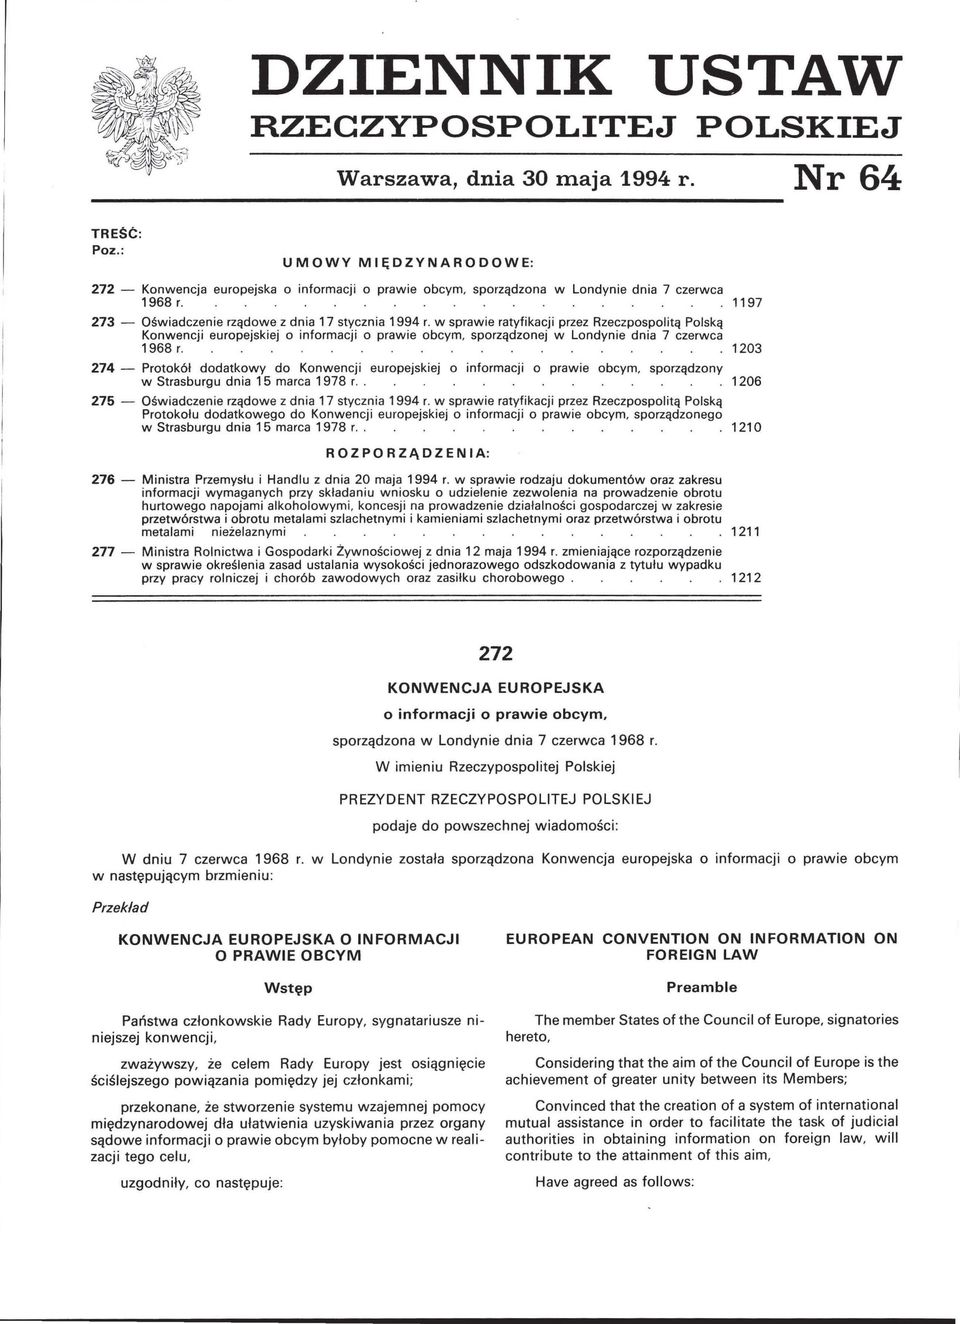 w sprawie ratyfikacji przez Rzeczpospolitą Polską Konwencji europejskiej o informacji o prawie obcym, sporządzonej w Londynie dnia 7 czerwca 1968 r.